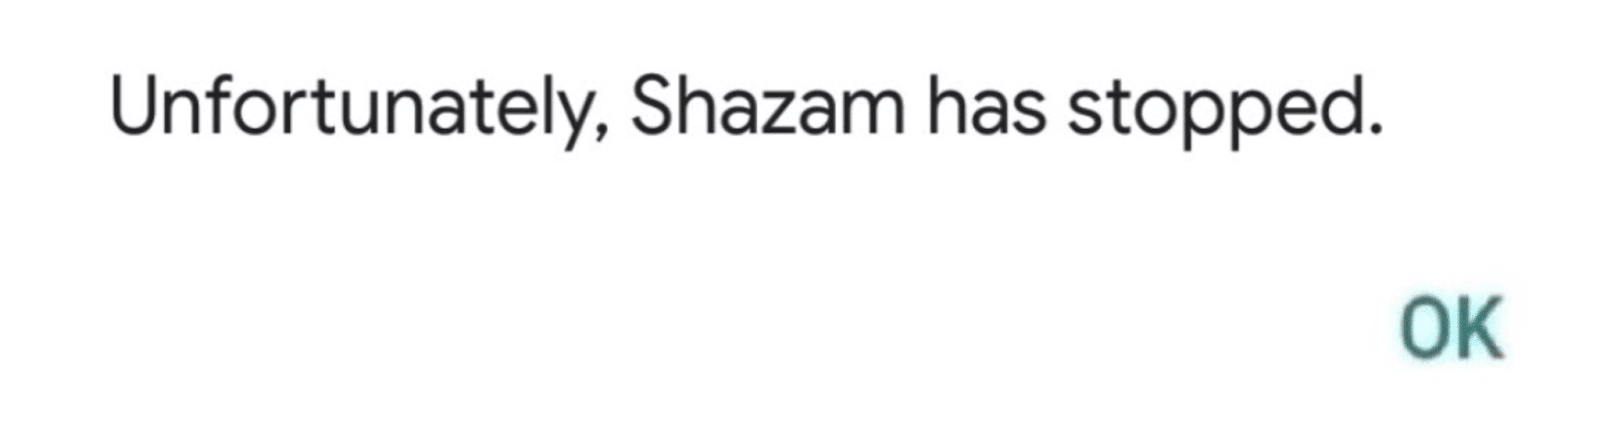 unfortunately Shazam has stopped error